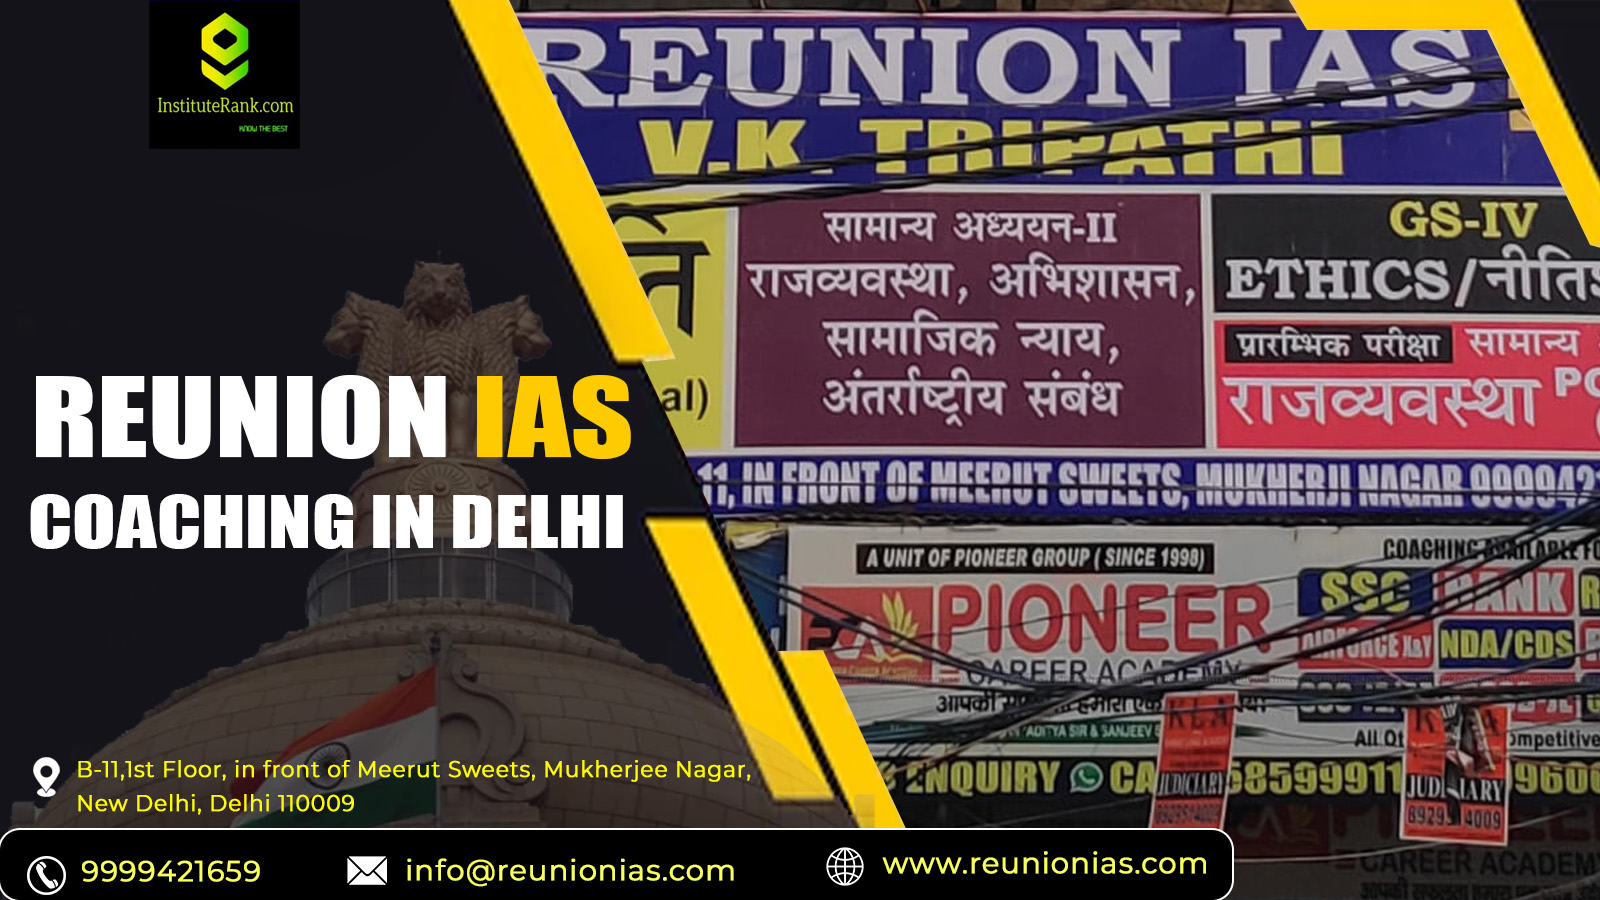 Reunion IAS coaching in Delhi